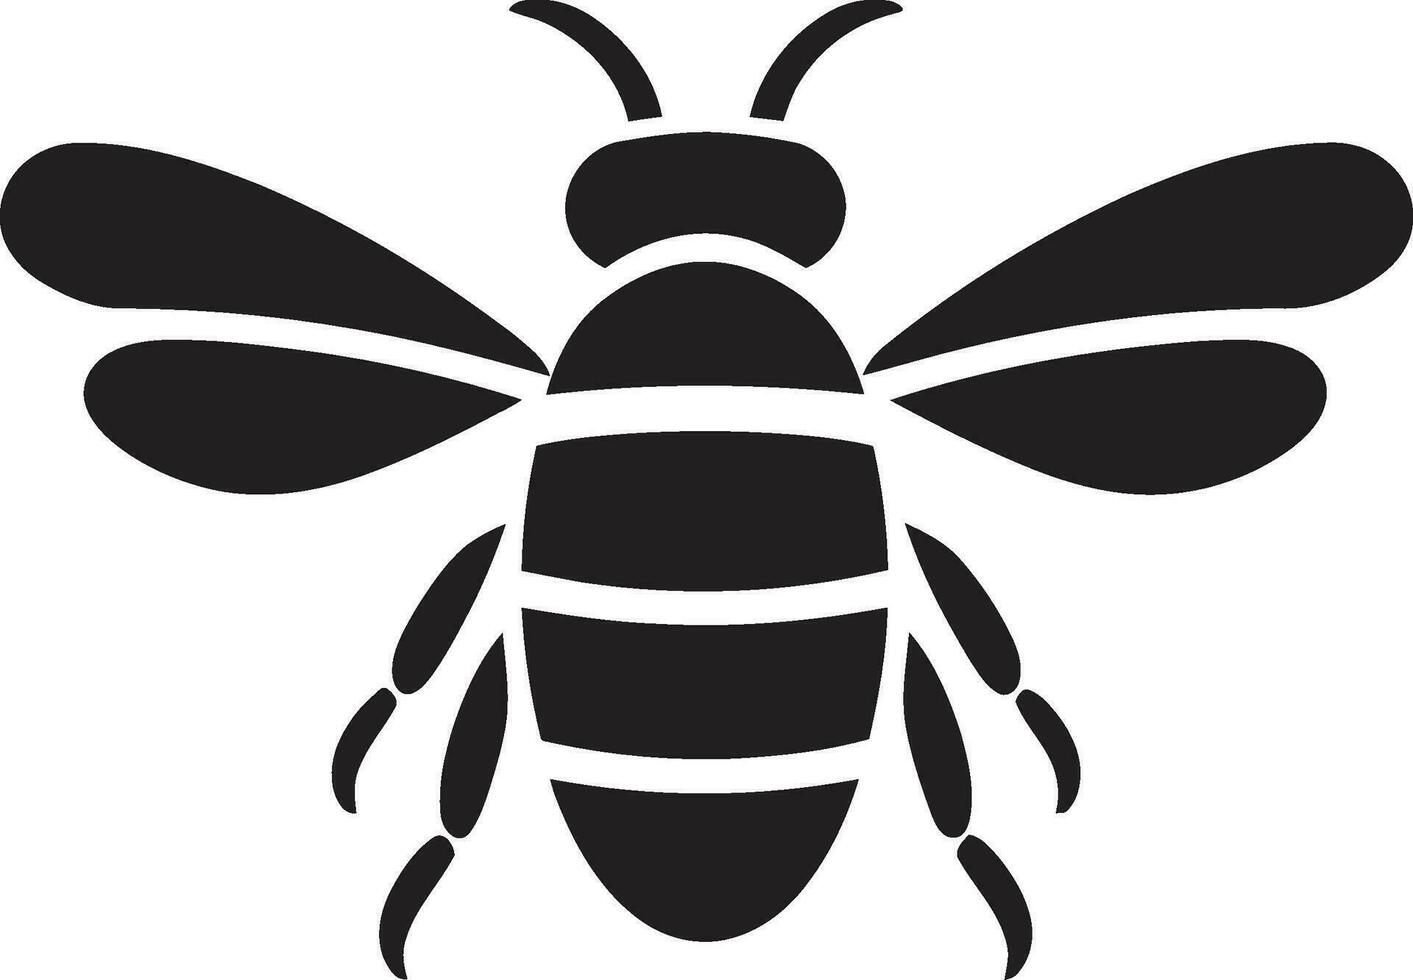 svart bikupa heraldik honung bi rike insignier vektor